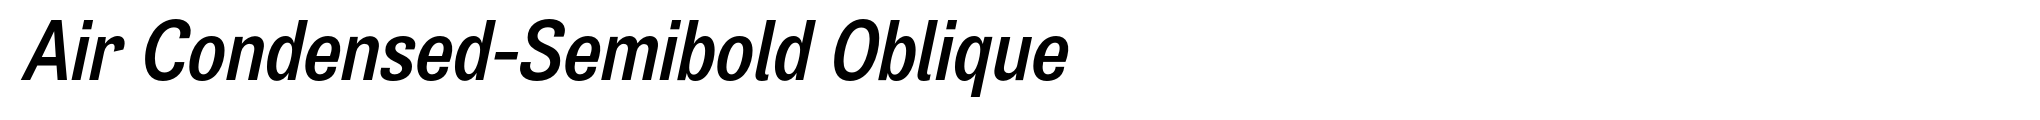 Air Condensed-Semibold Oblique image